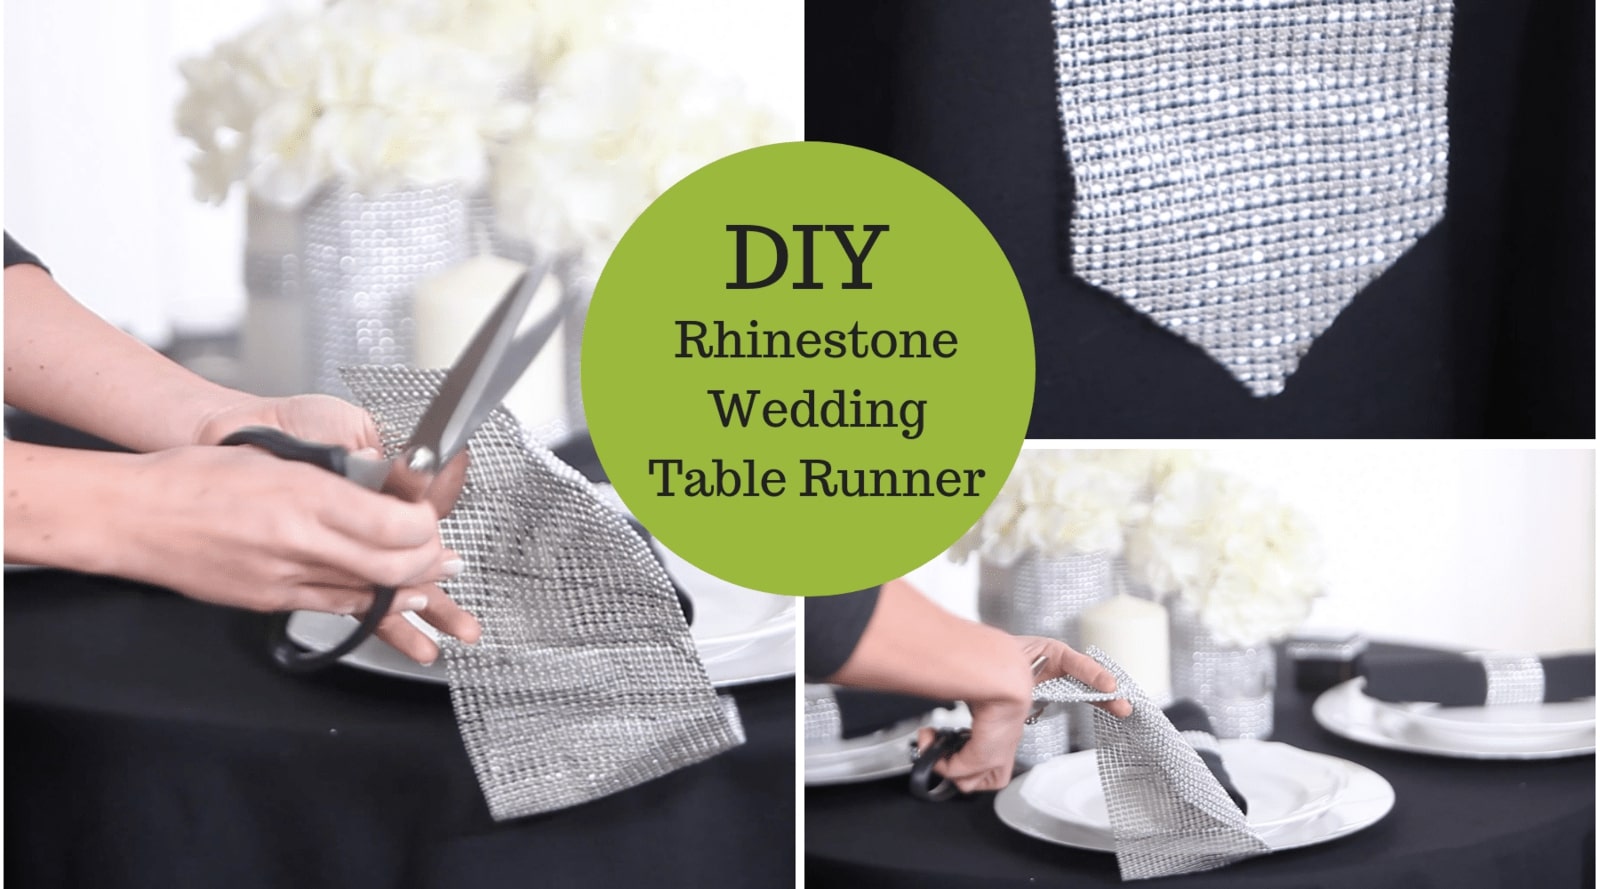 DIY Rhinestone Table Runner – Our Easiest One Yet